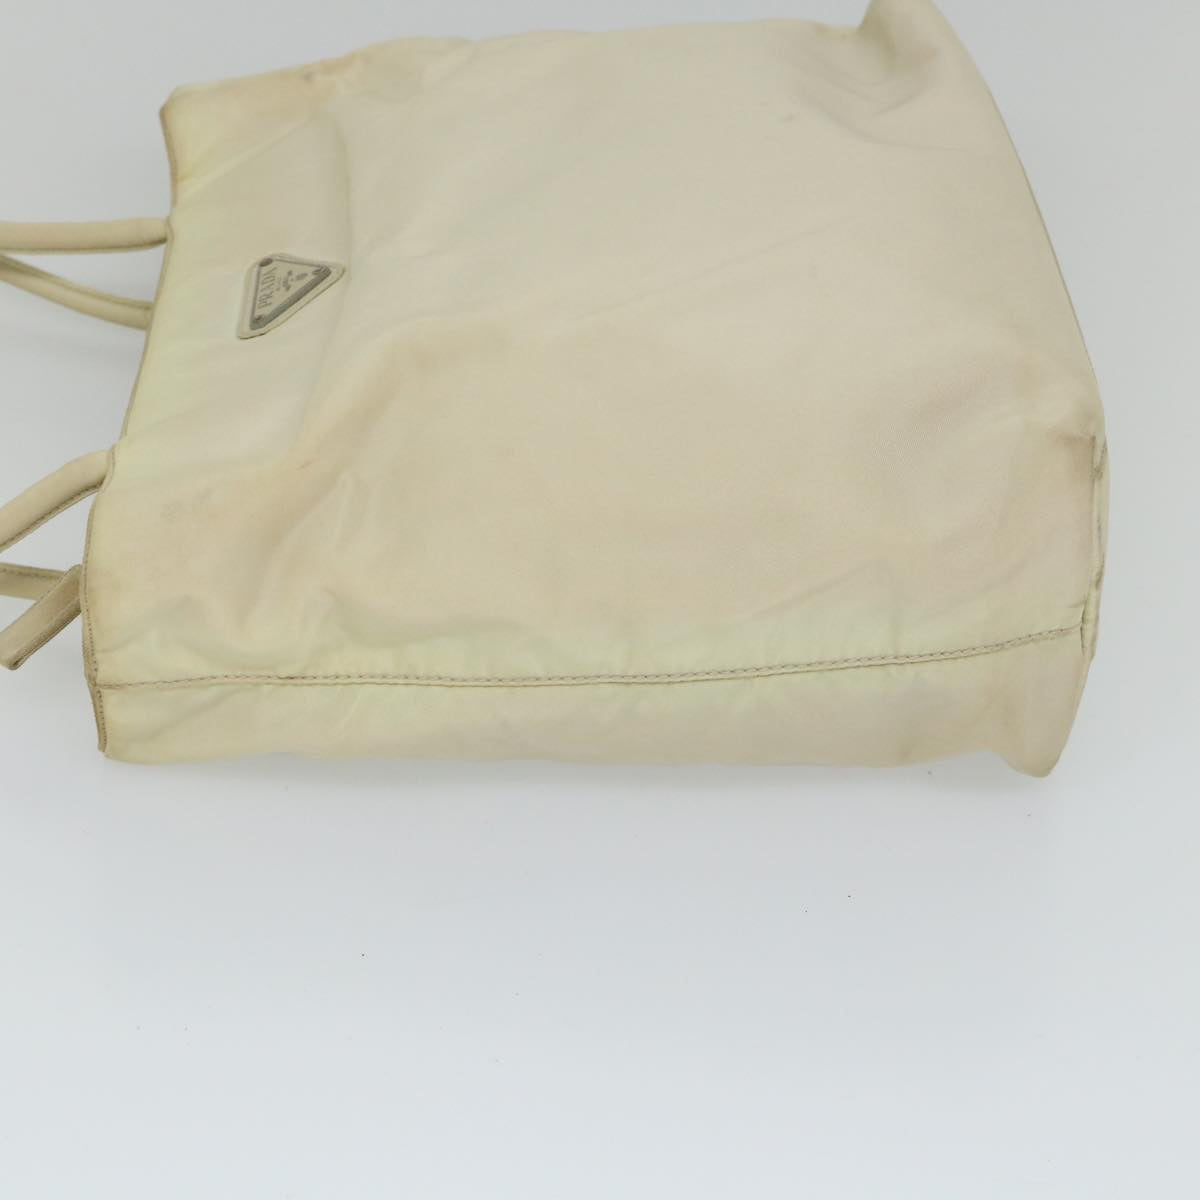 PRADA Tote Bag Nylon Beige Auth 56560